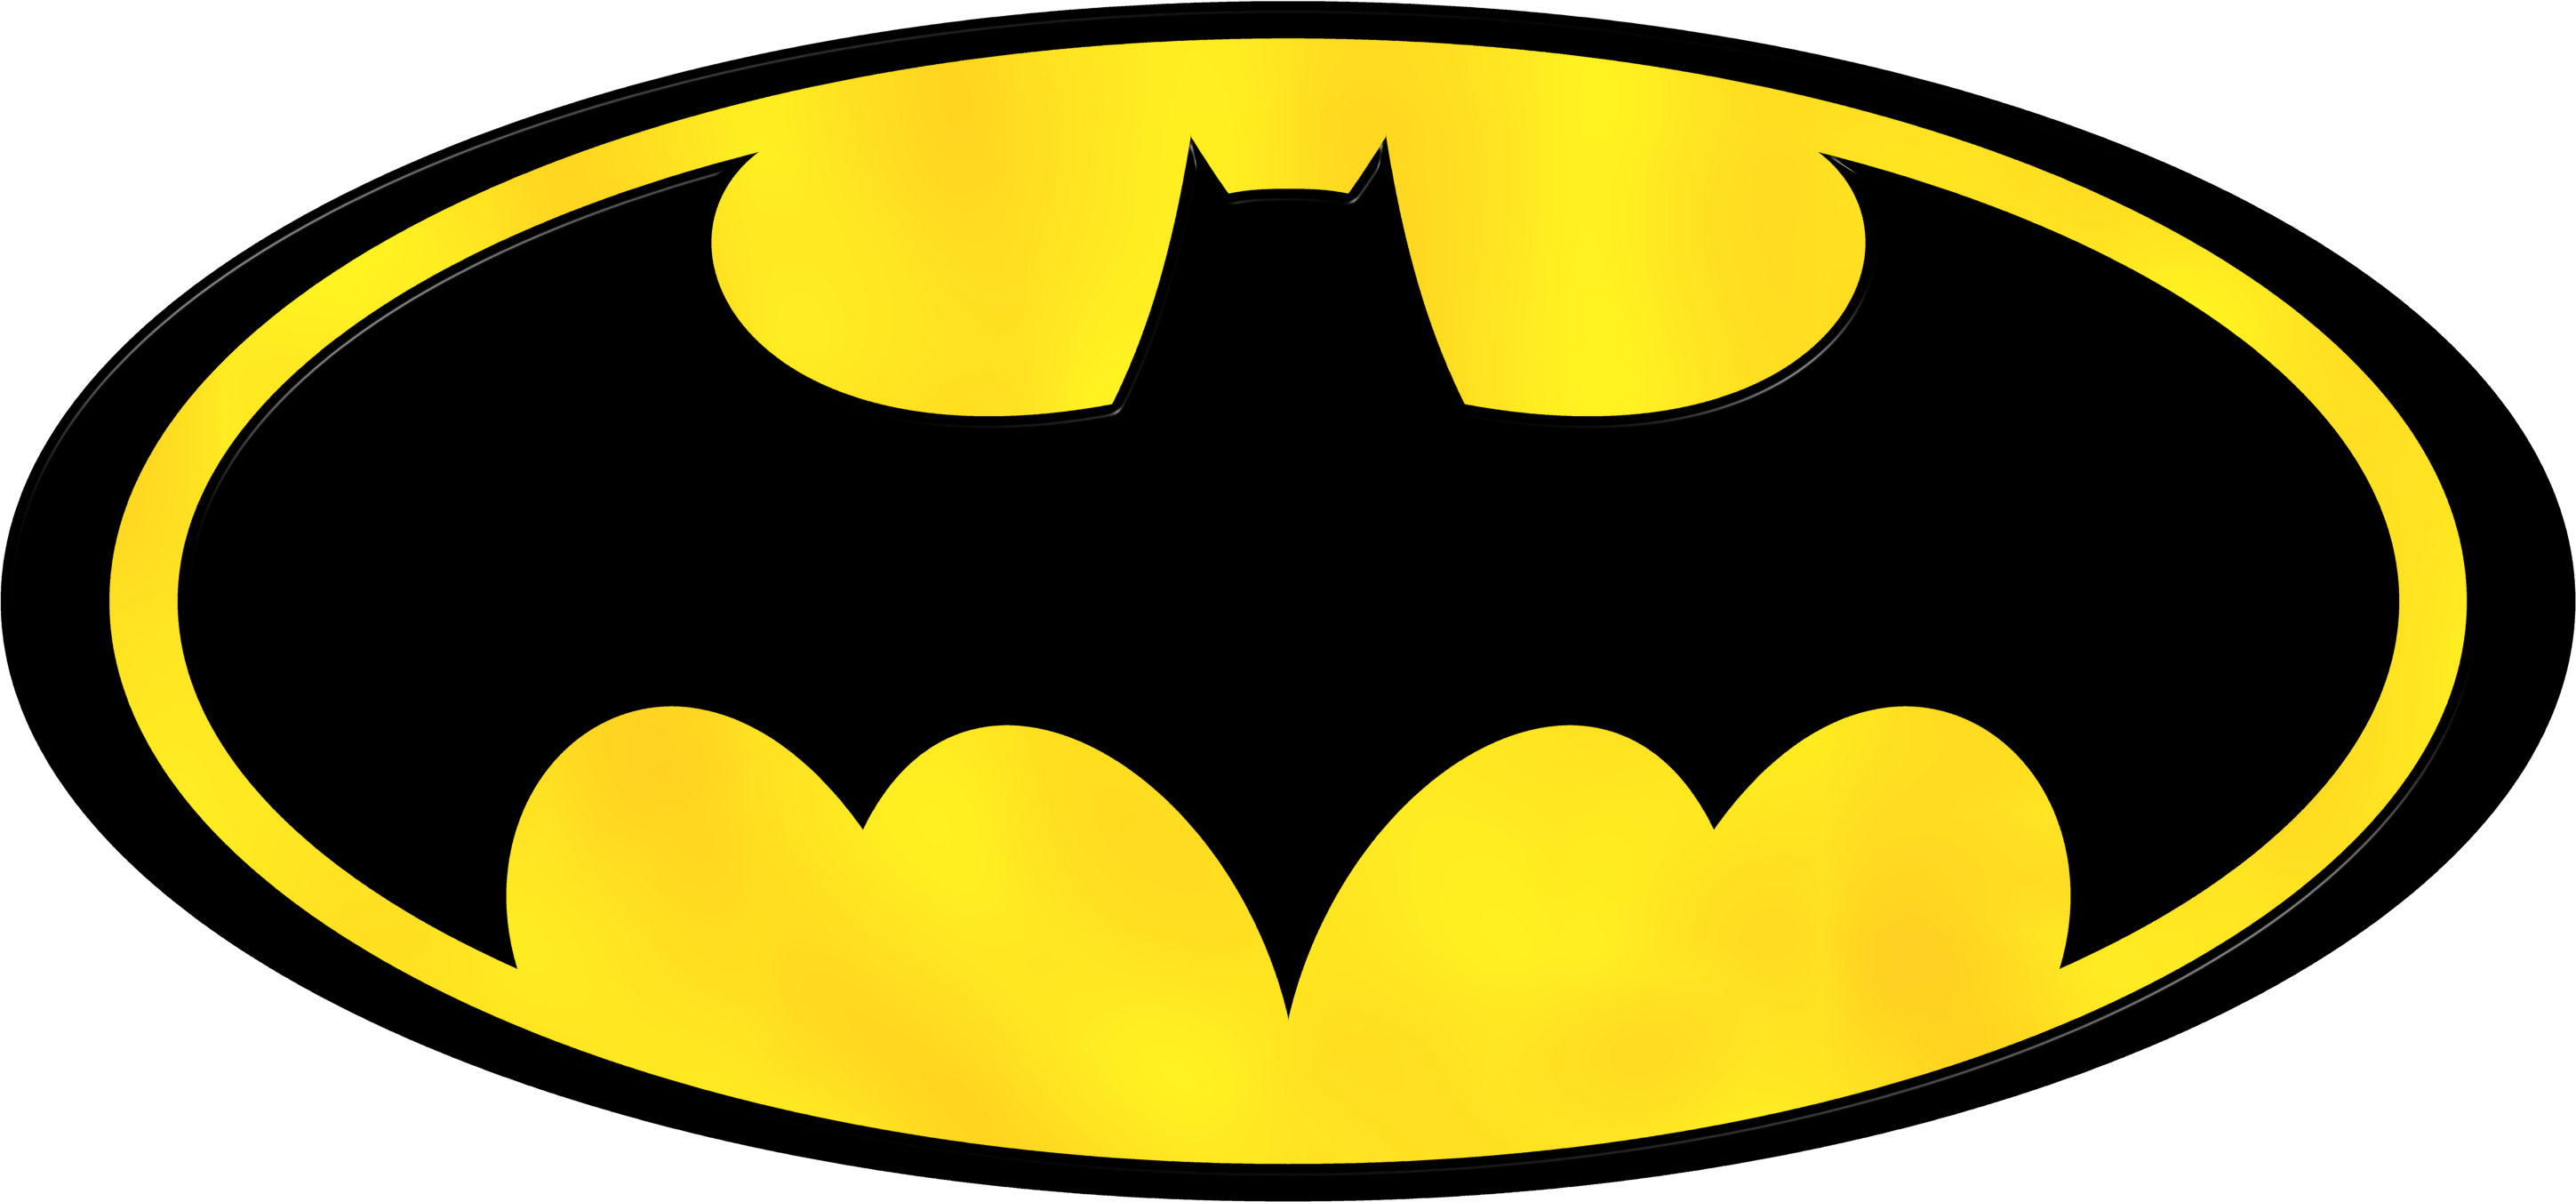 Batman Robin Clipart at GetDrawings.com.